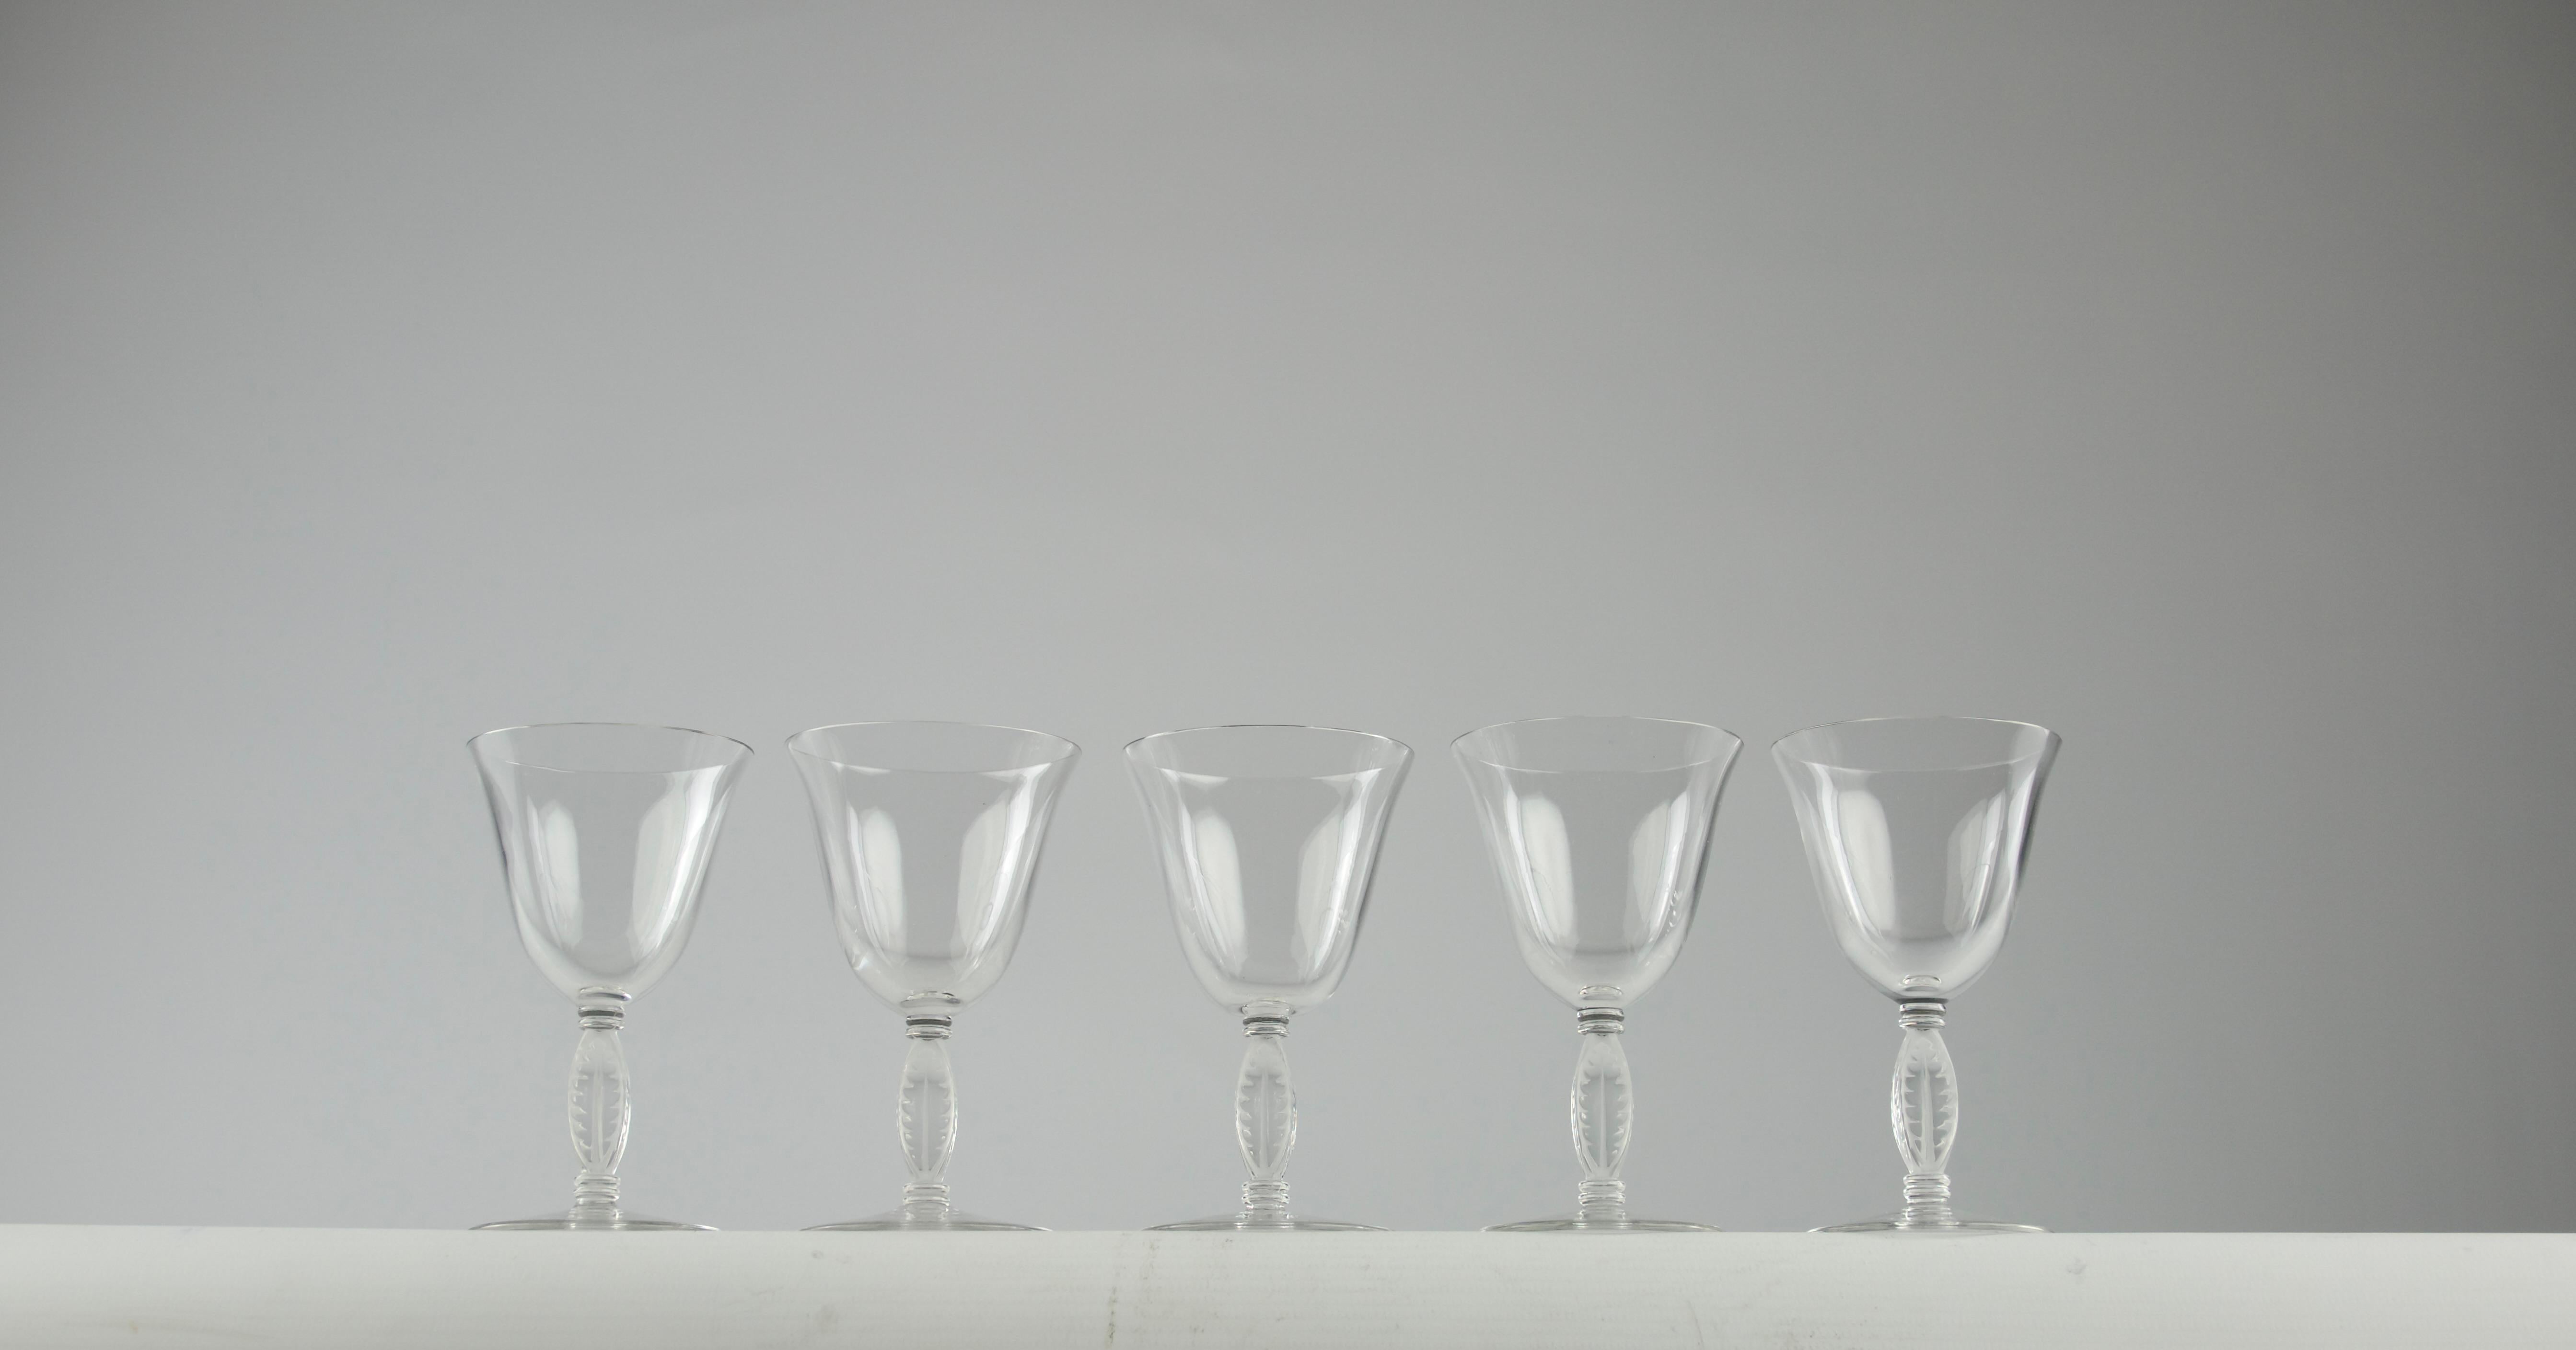 Precioso juego Lalique Fontainebleau de cinco copas de licor. Otras copas de vino de la misma colección están disponibles en la tienda.

En muy buen estado.

Dimensiones en cm ( A x P ) : 11 x 6.5

Envío seguro.

Diseñado por primera vez por René